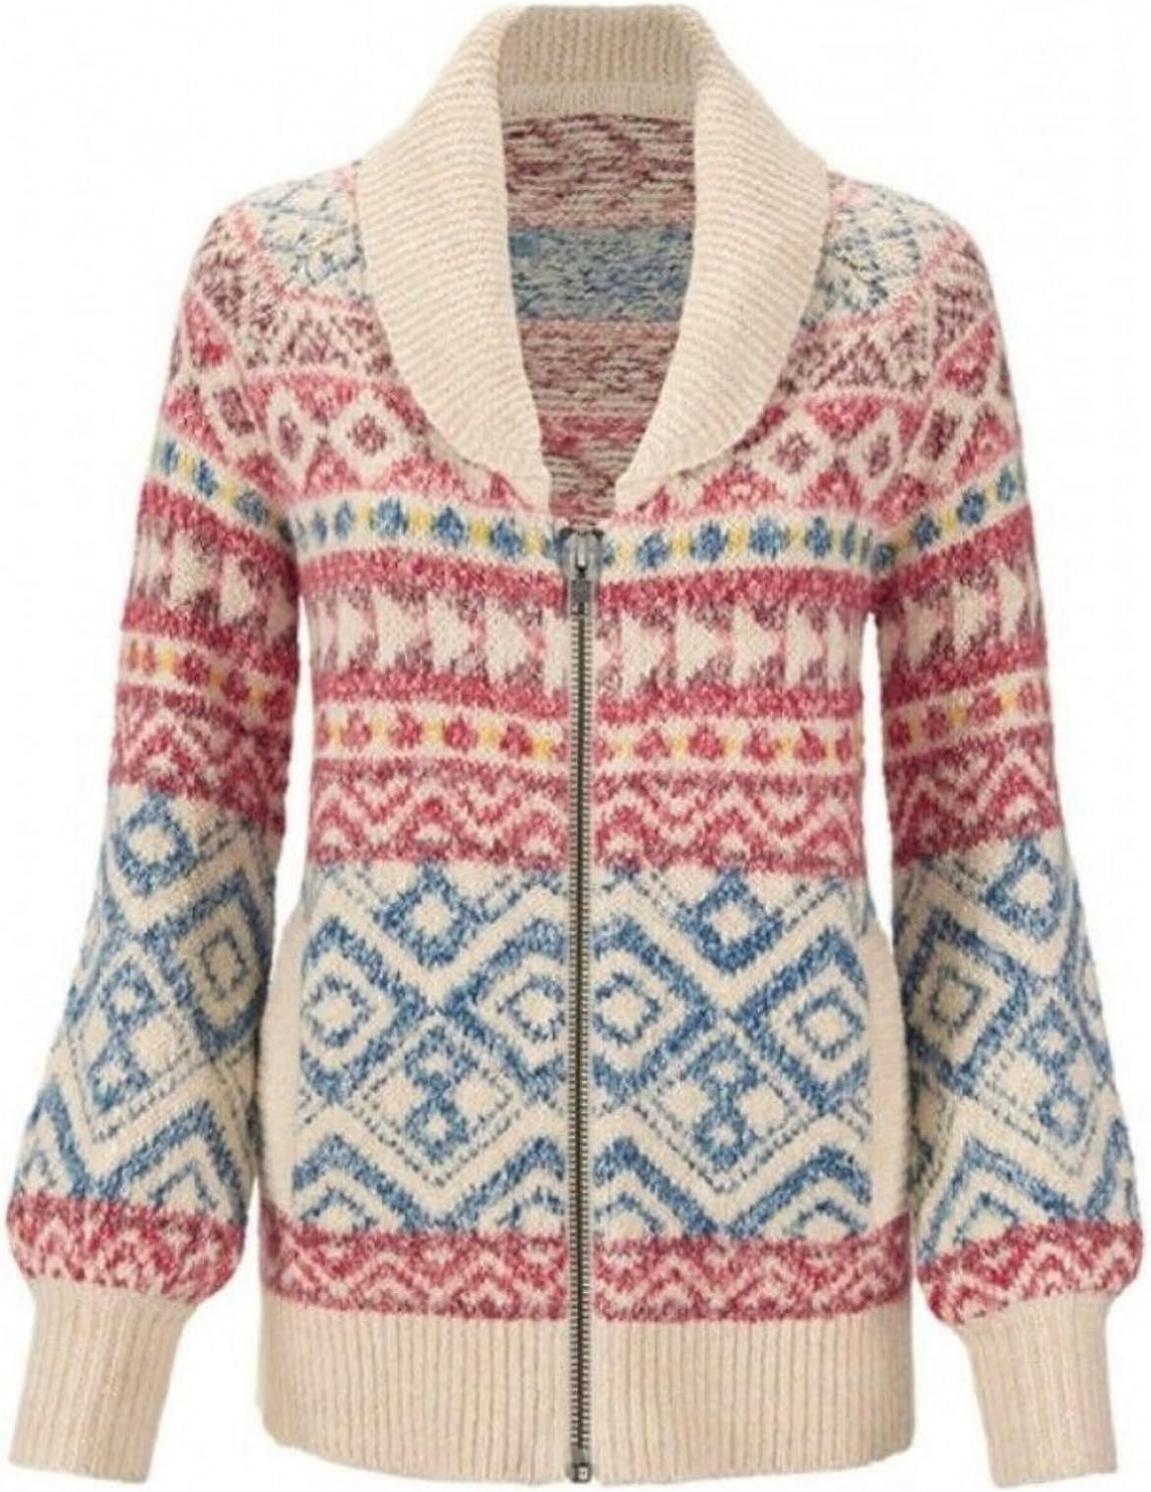 cabi Highlands Sweater